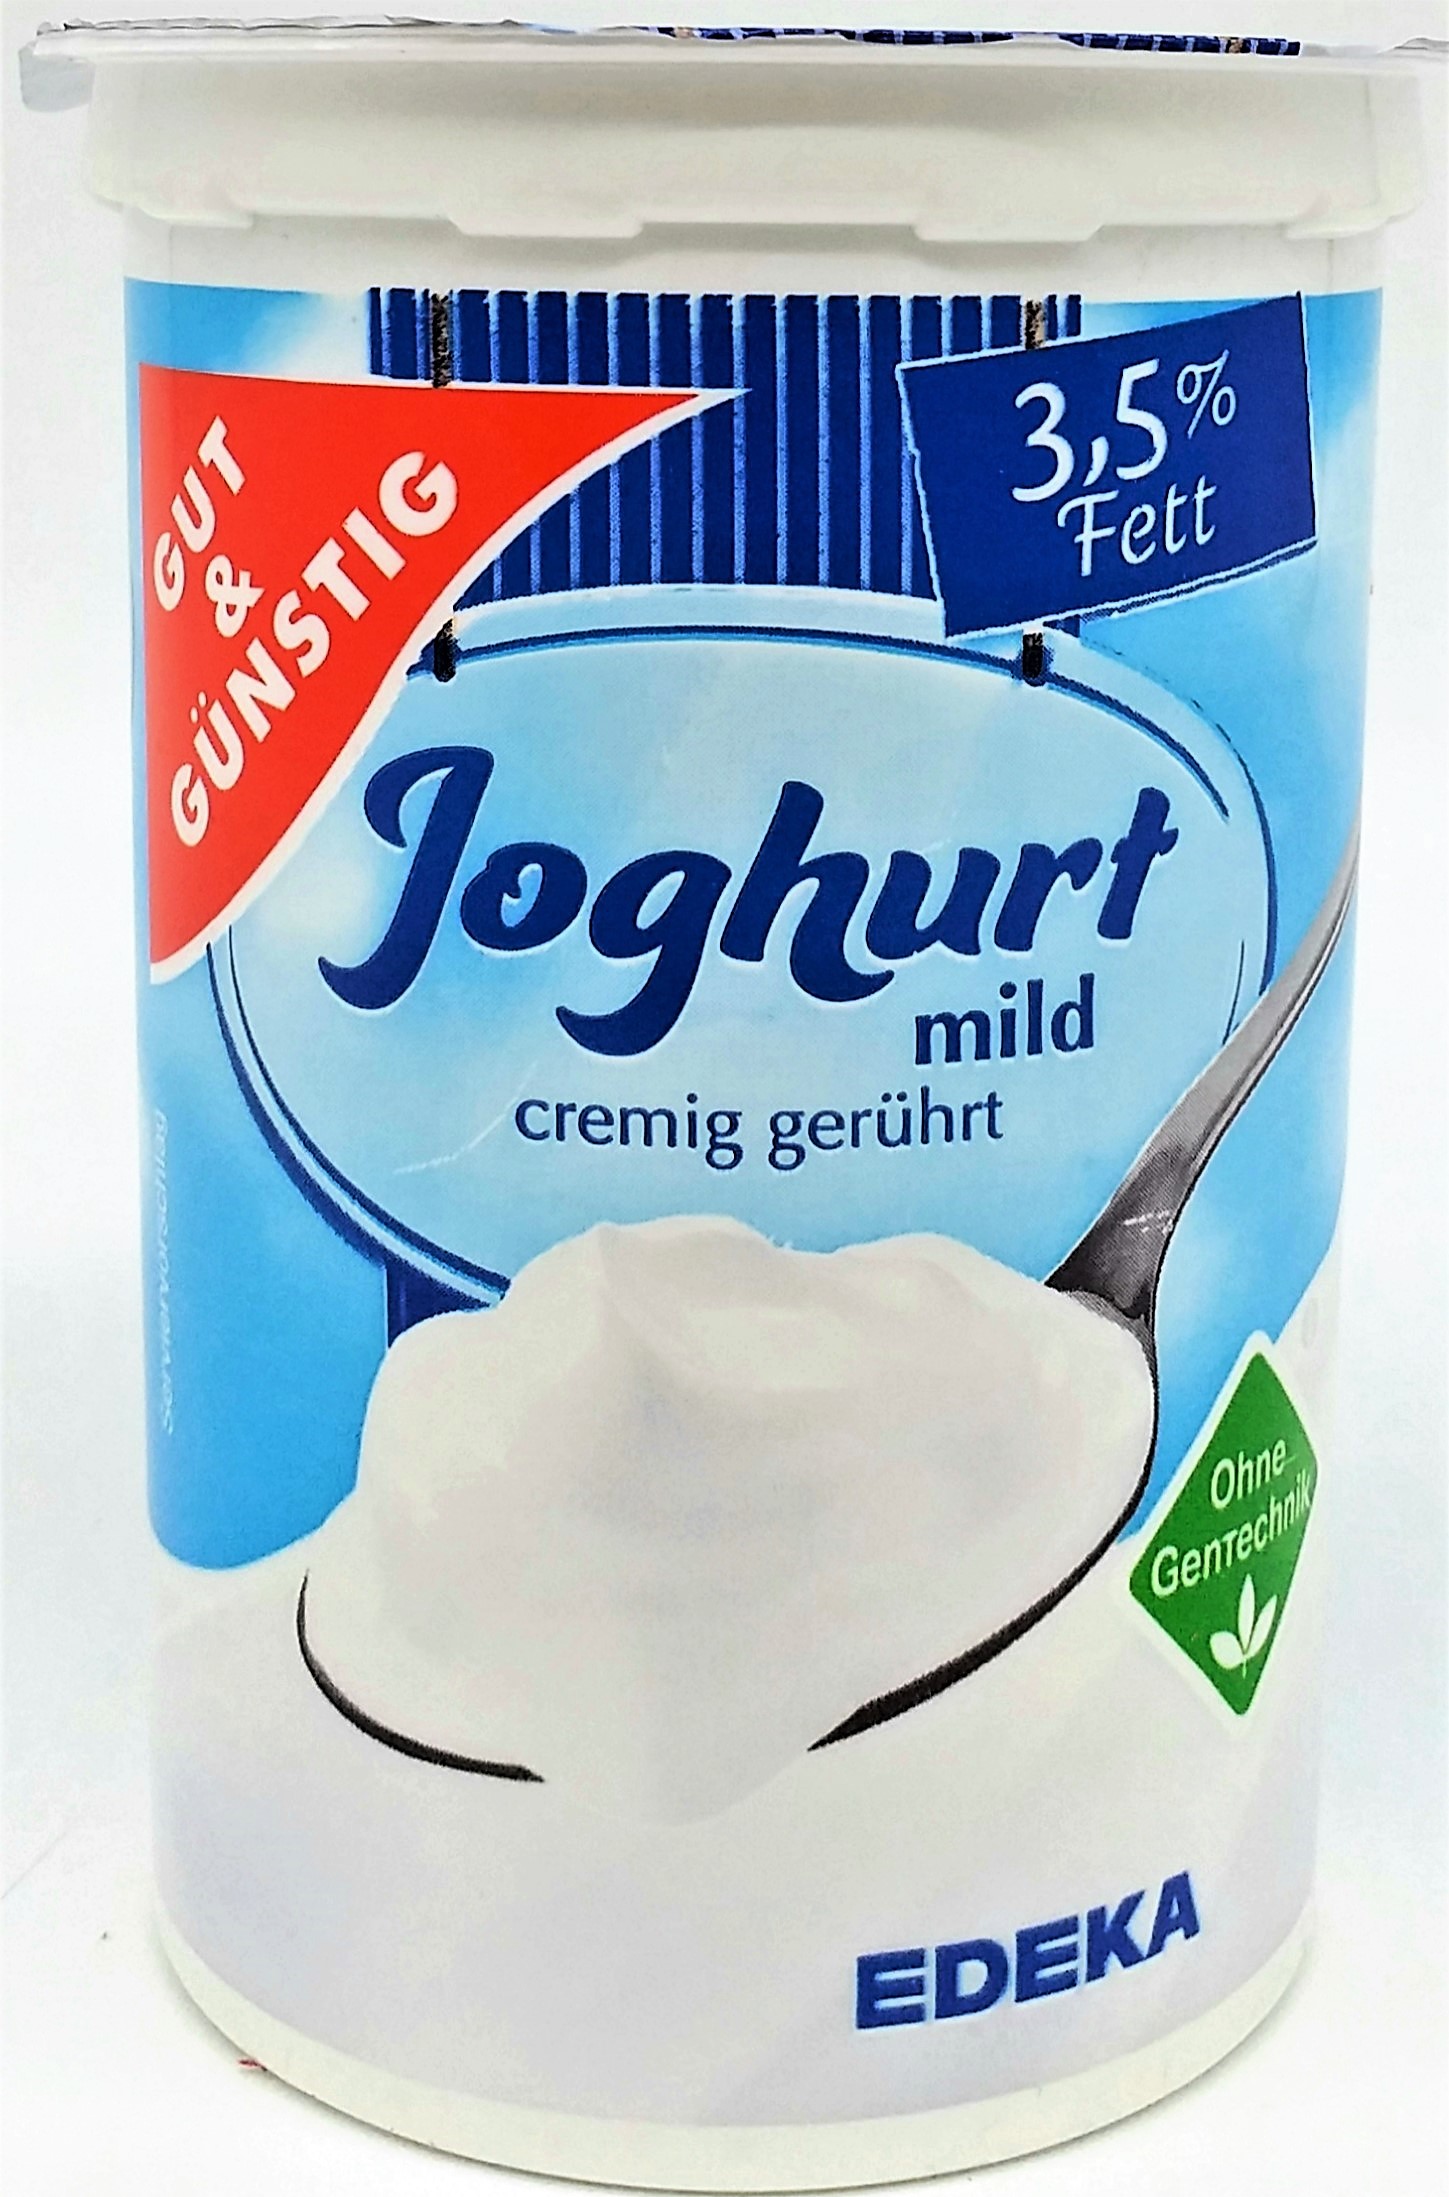 G&G Joghurt 3,5% Fett 500g 